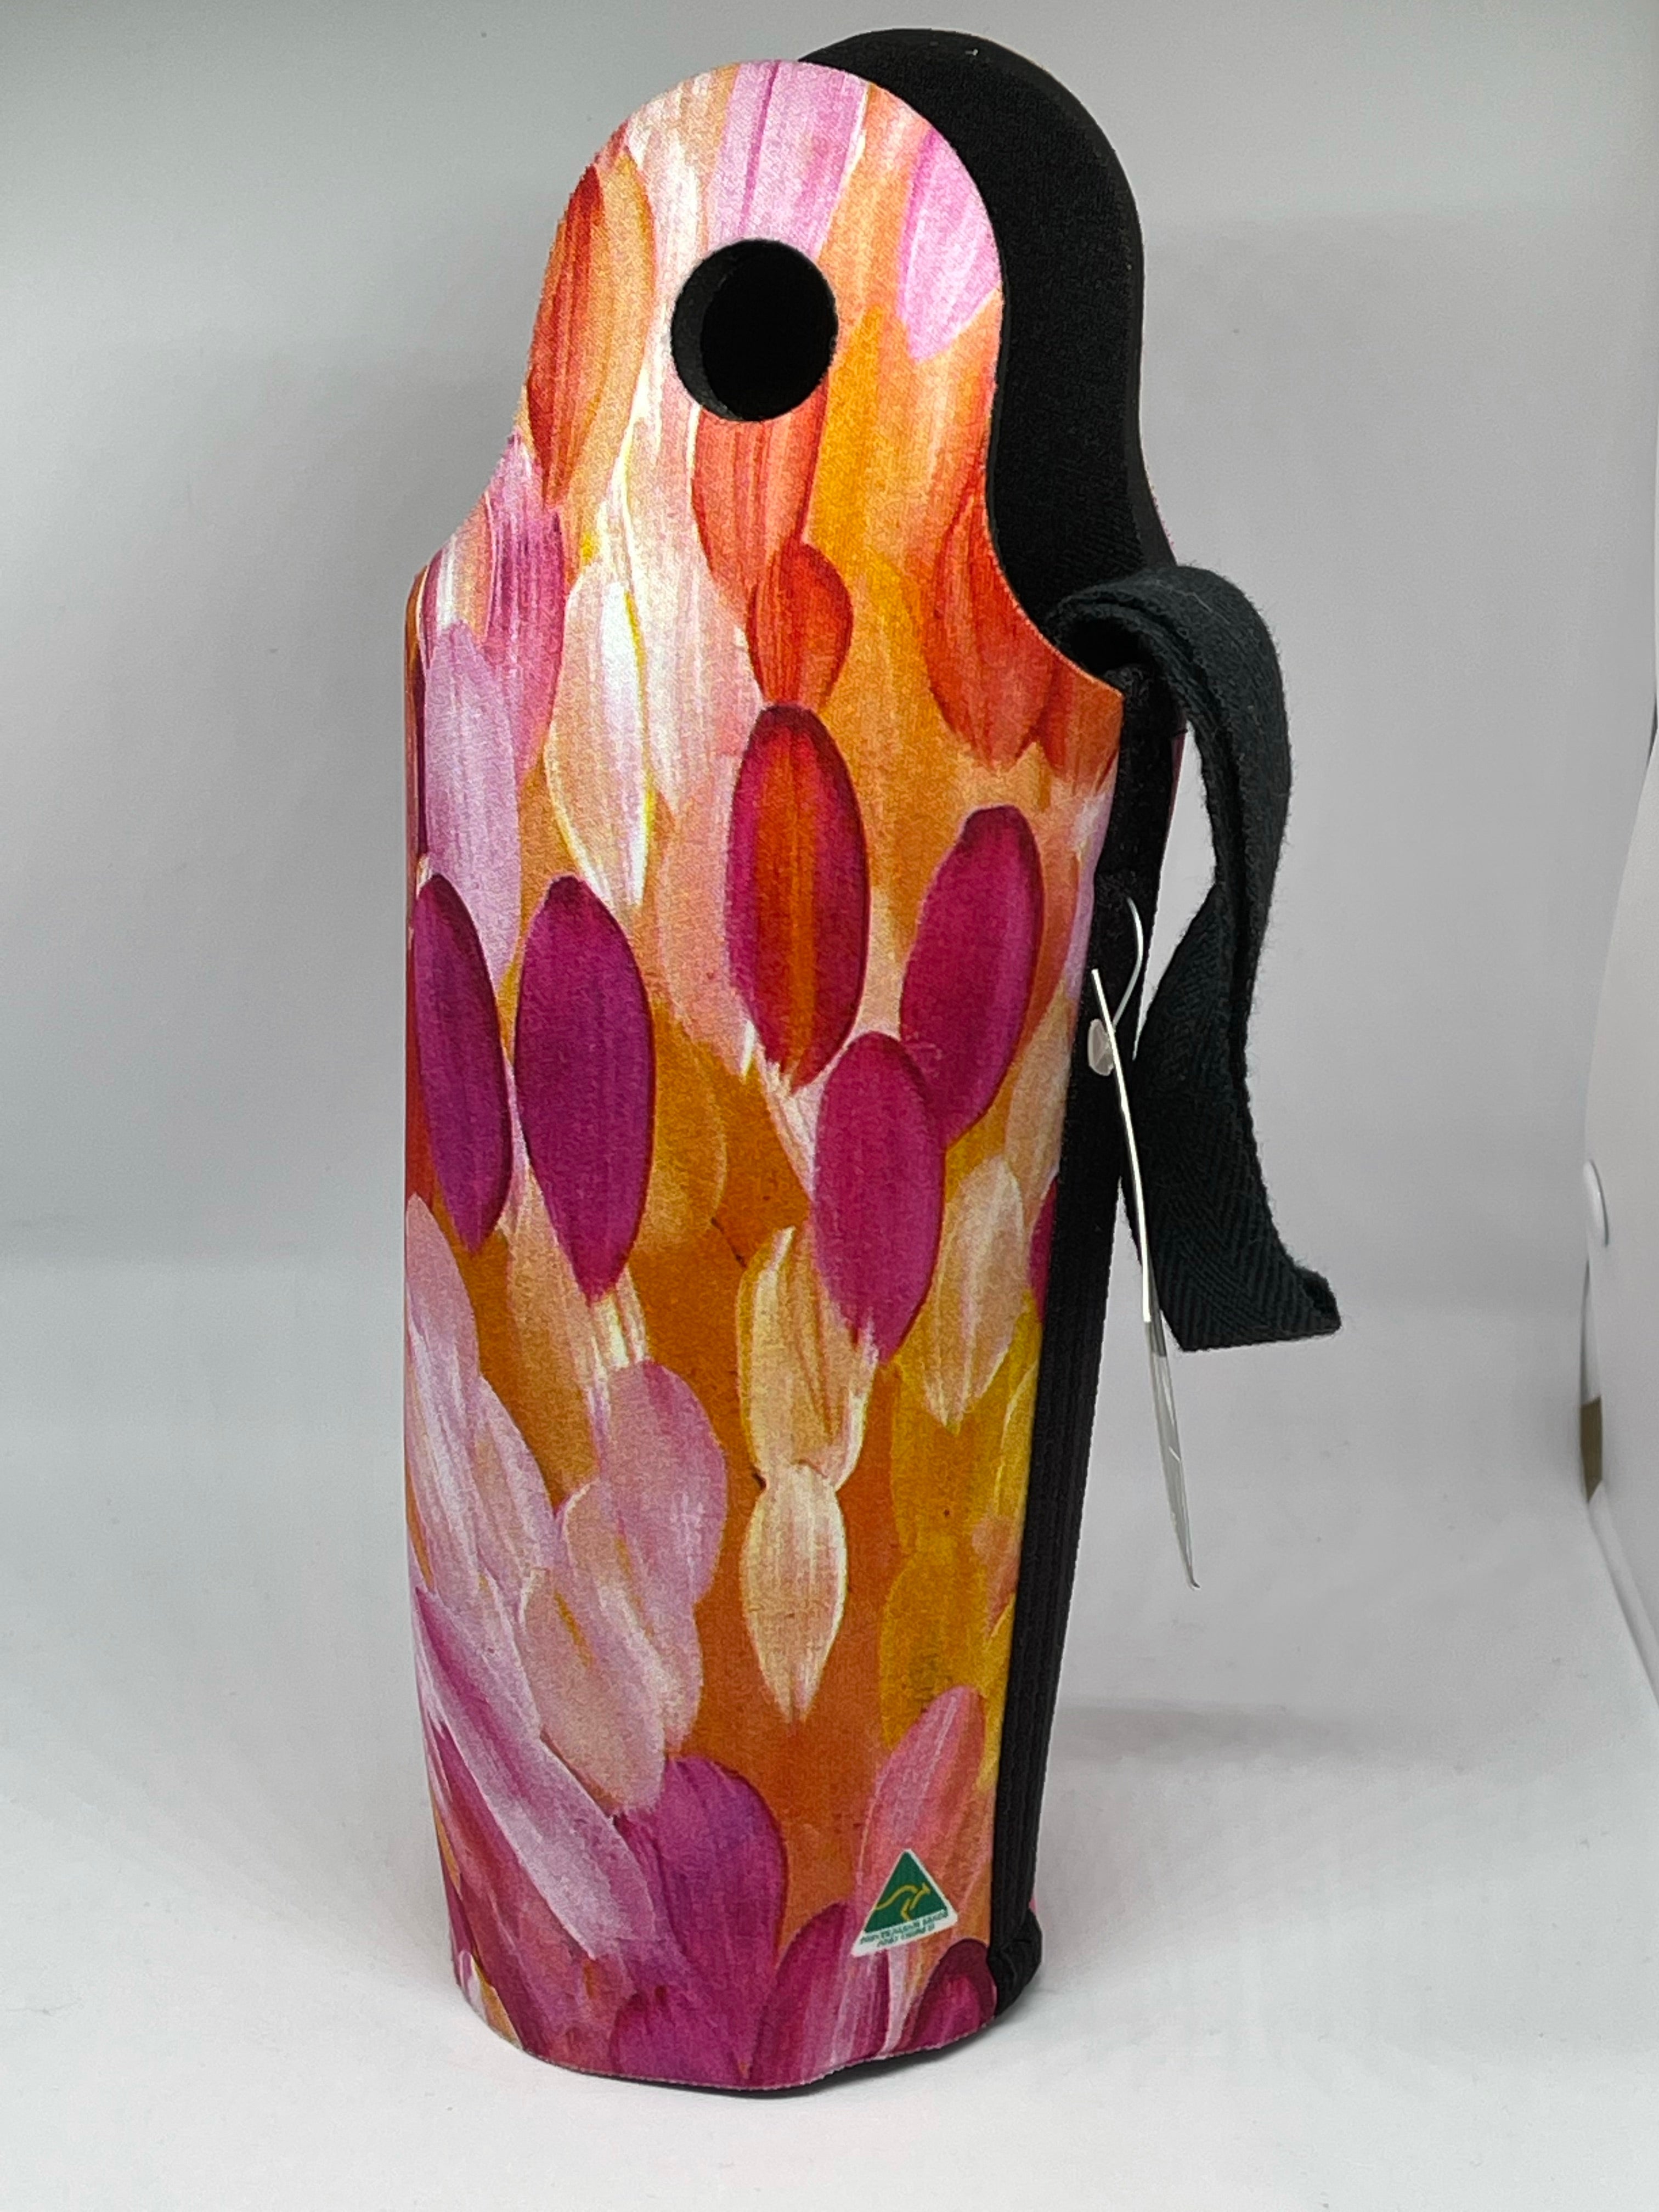 Water Bottle Cooler - Gloria Petyarre - Pink